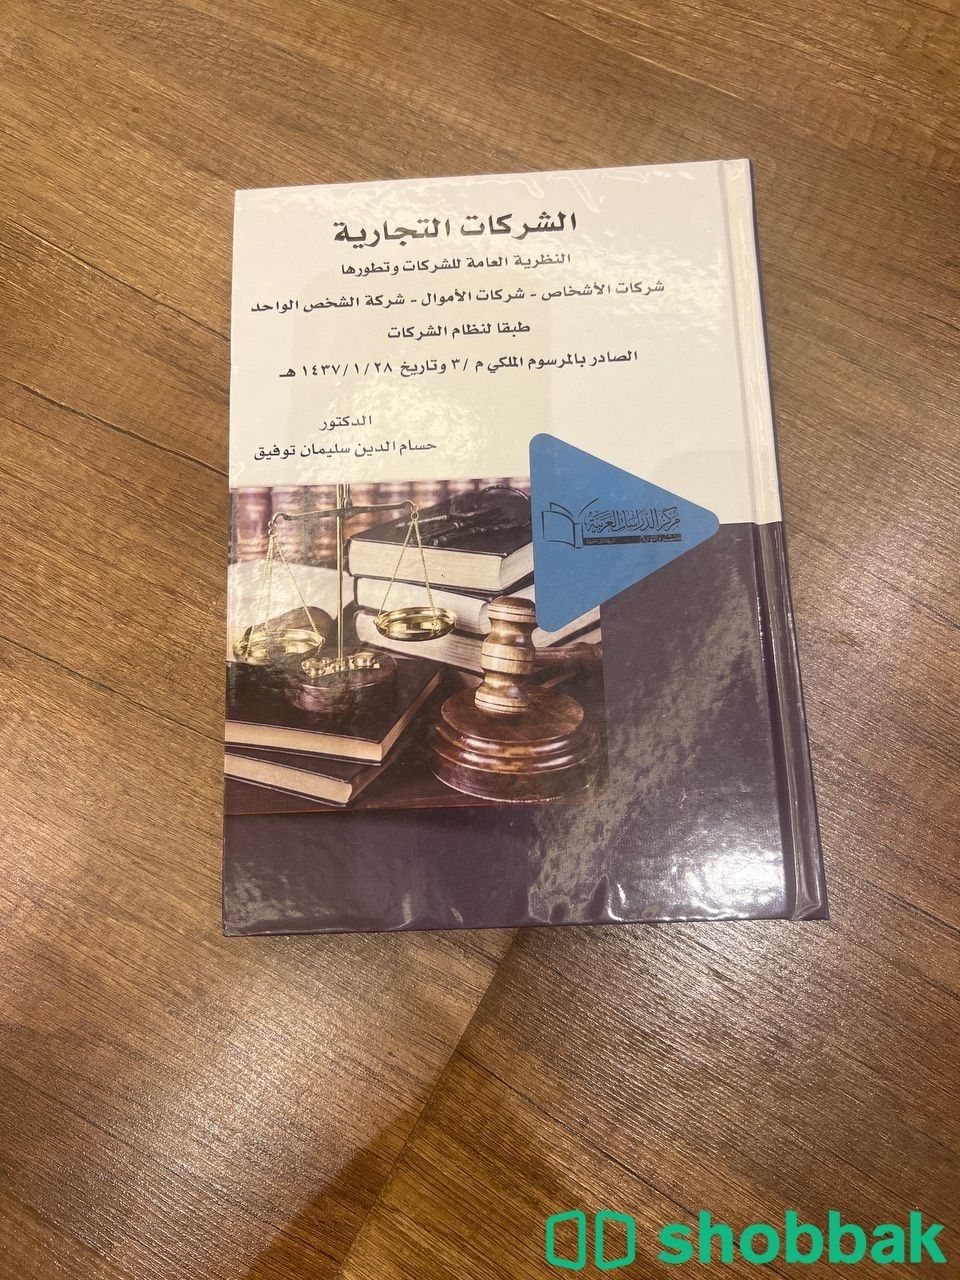  كتاب الشركات التجاريه Shobbak Saudi Arabia